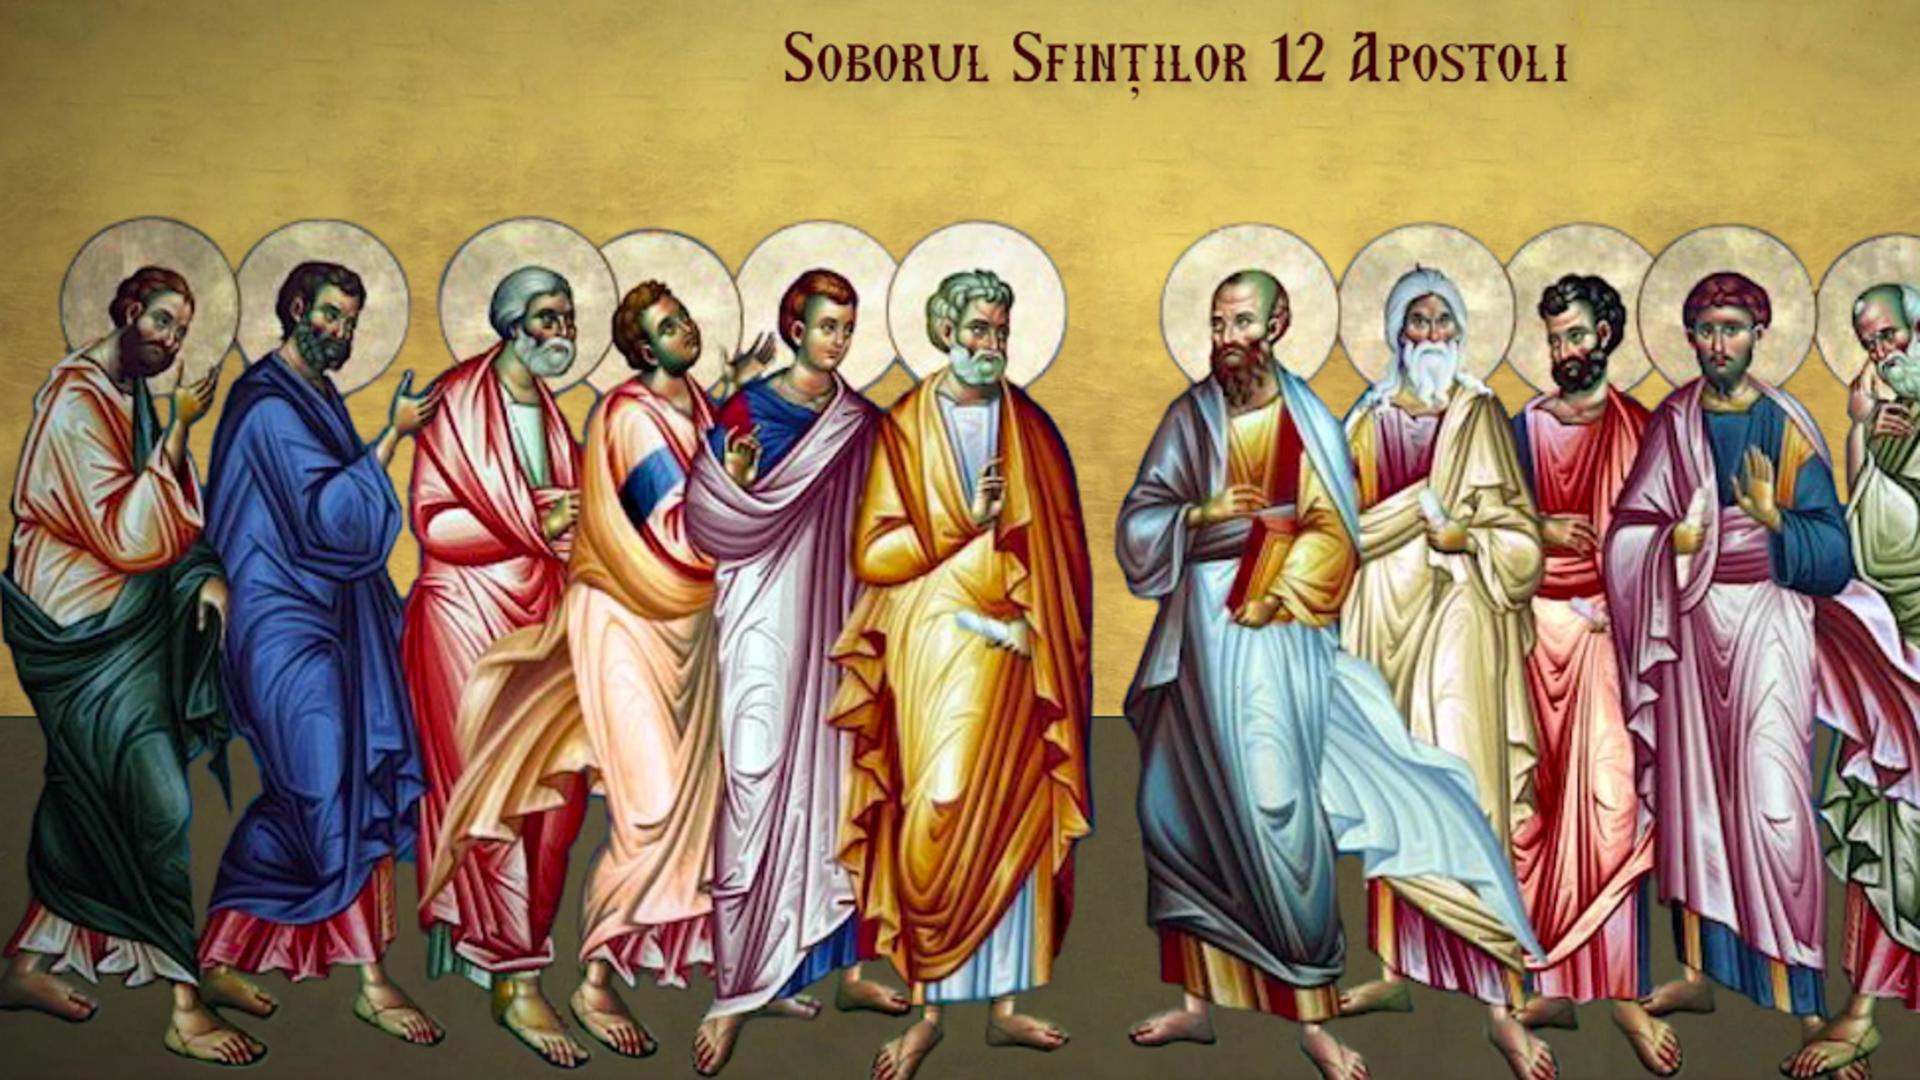 30 iunie, sărbătoare cu cruce roșie în calendarul ortodox: Soborul Sfinților 12 Apostoli. Ce rugăciune se citește pentru spor în casă